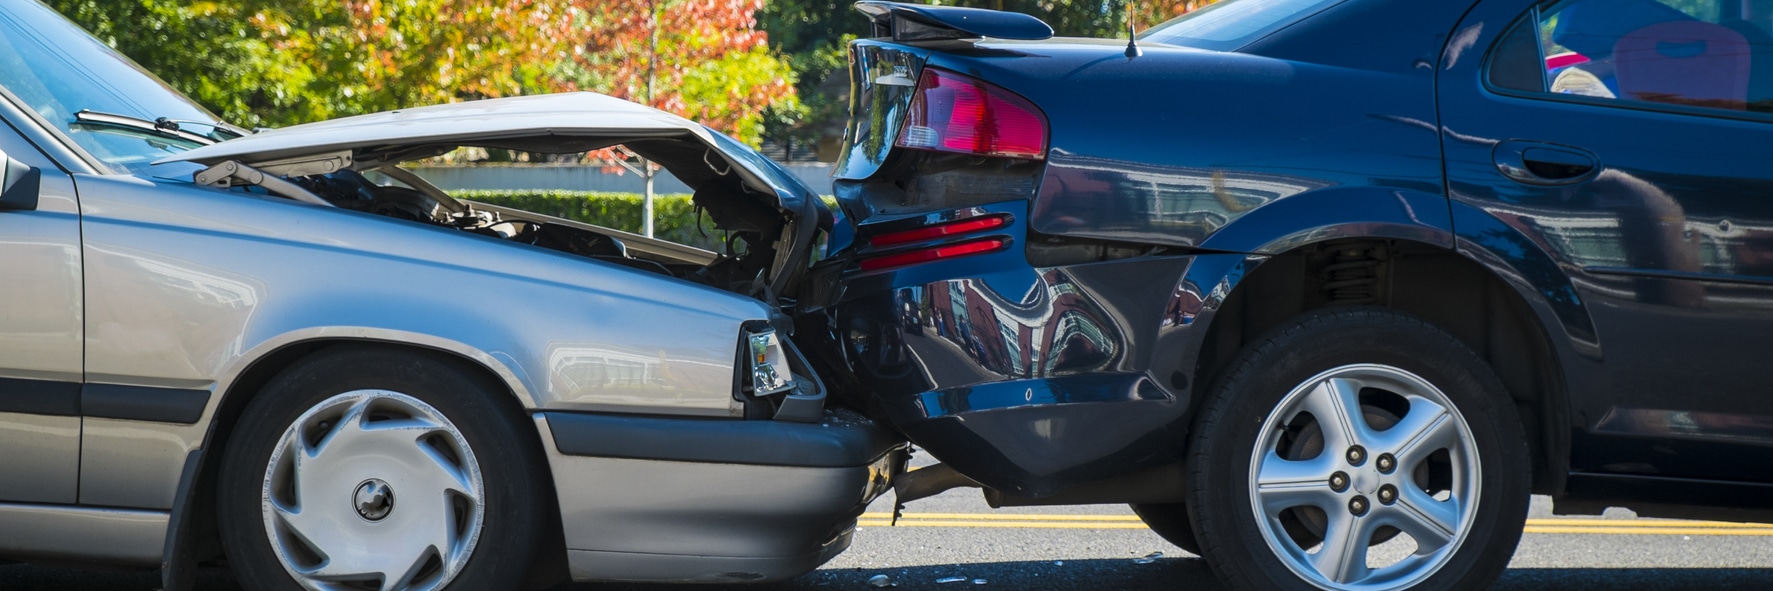 Types of Motor Vehicle Crashes